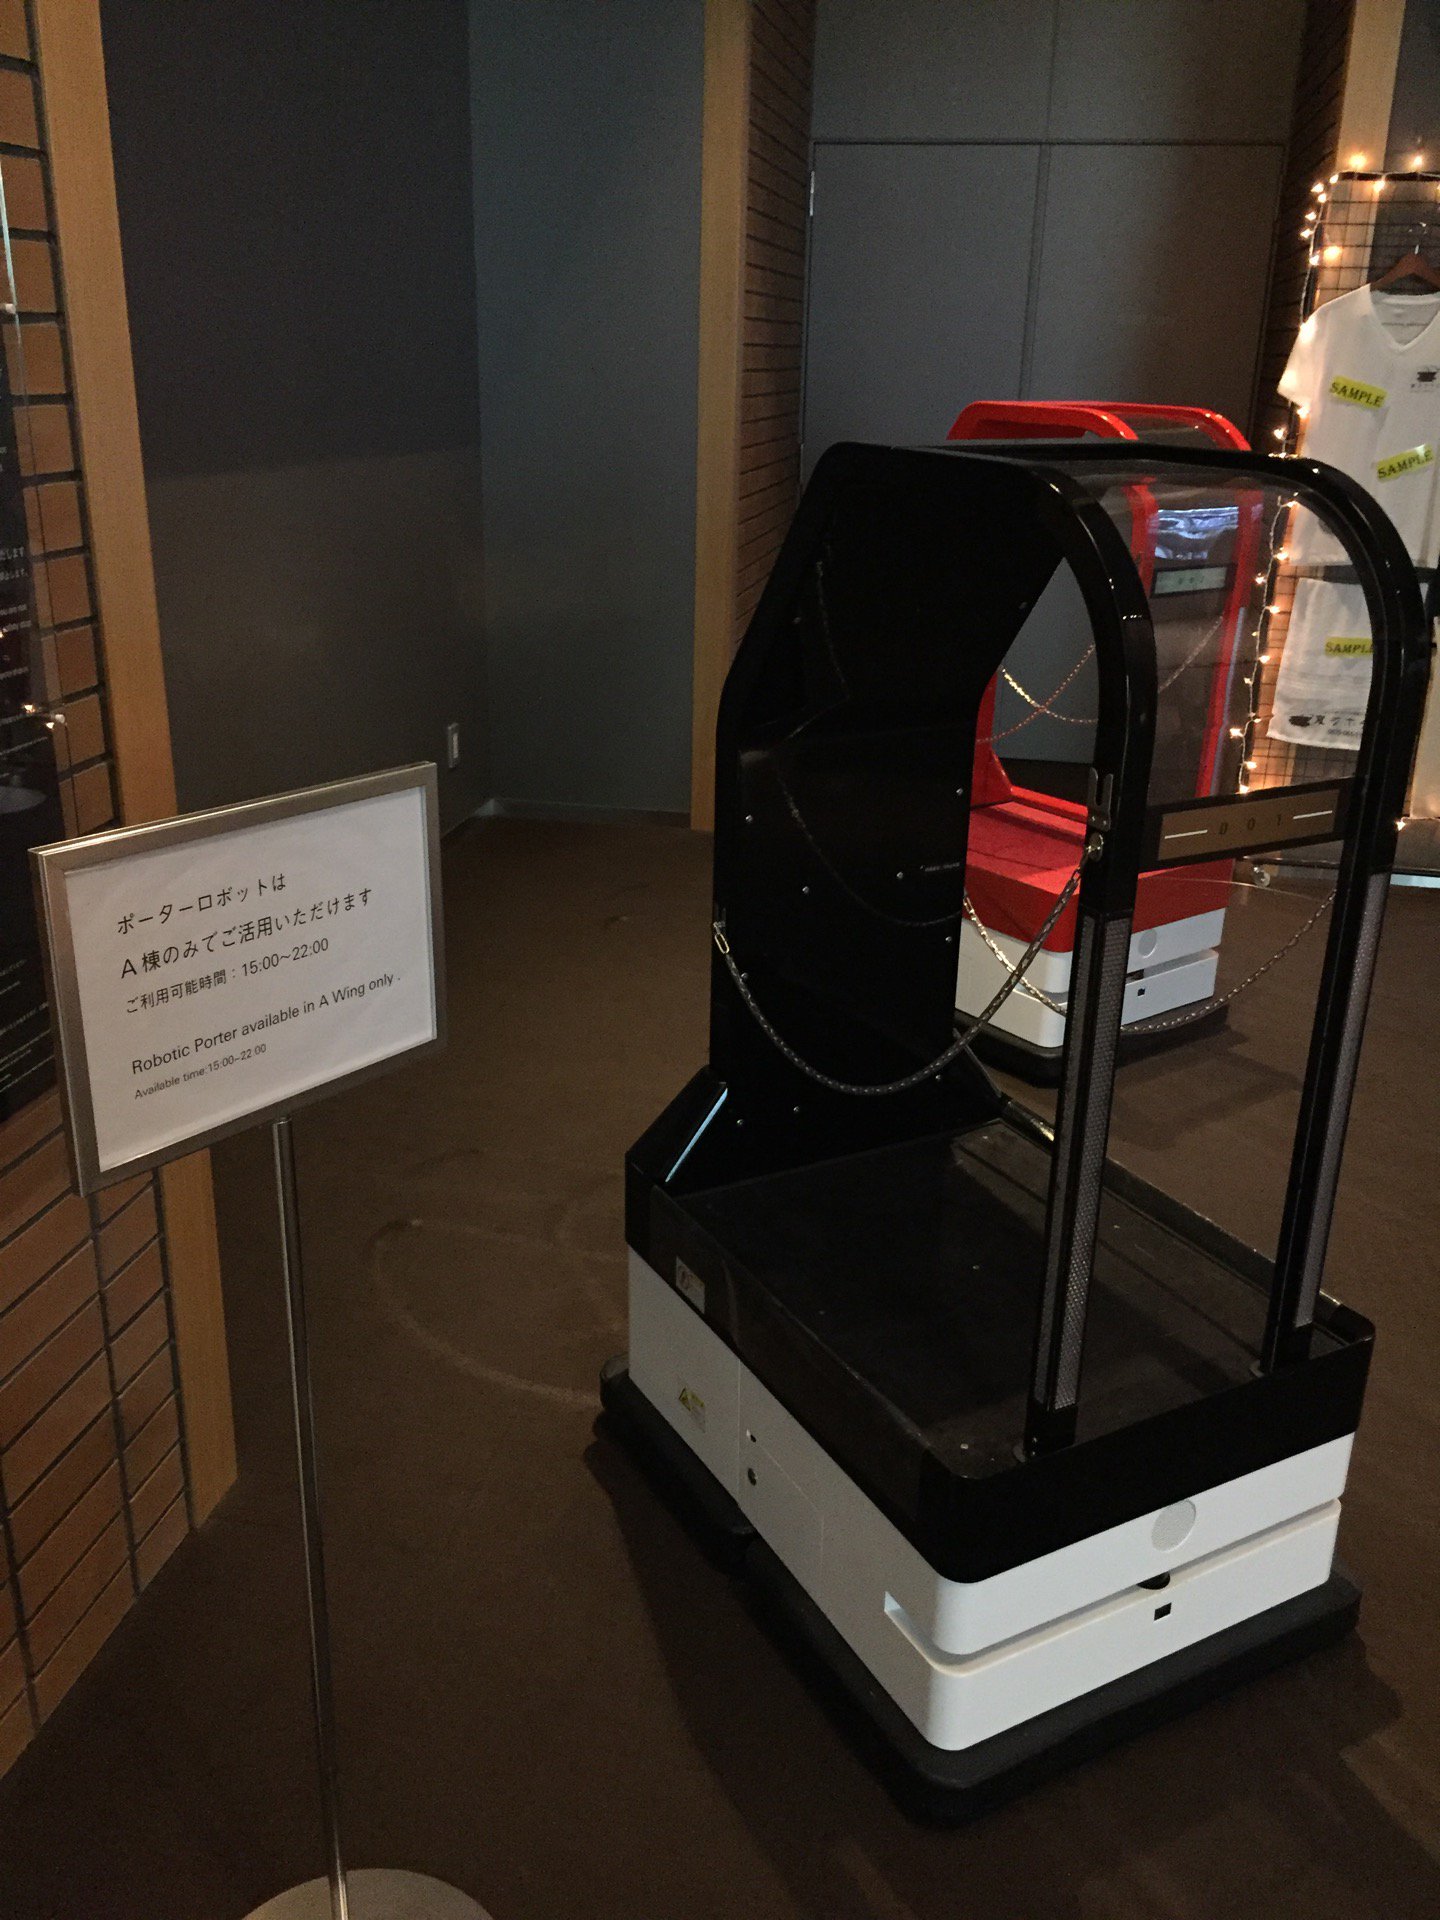 (ノД`)「ポーターロボットはA棟のみでご利用いただけます」 (@ 変なホテル in 佐世保市, 長崎県)  